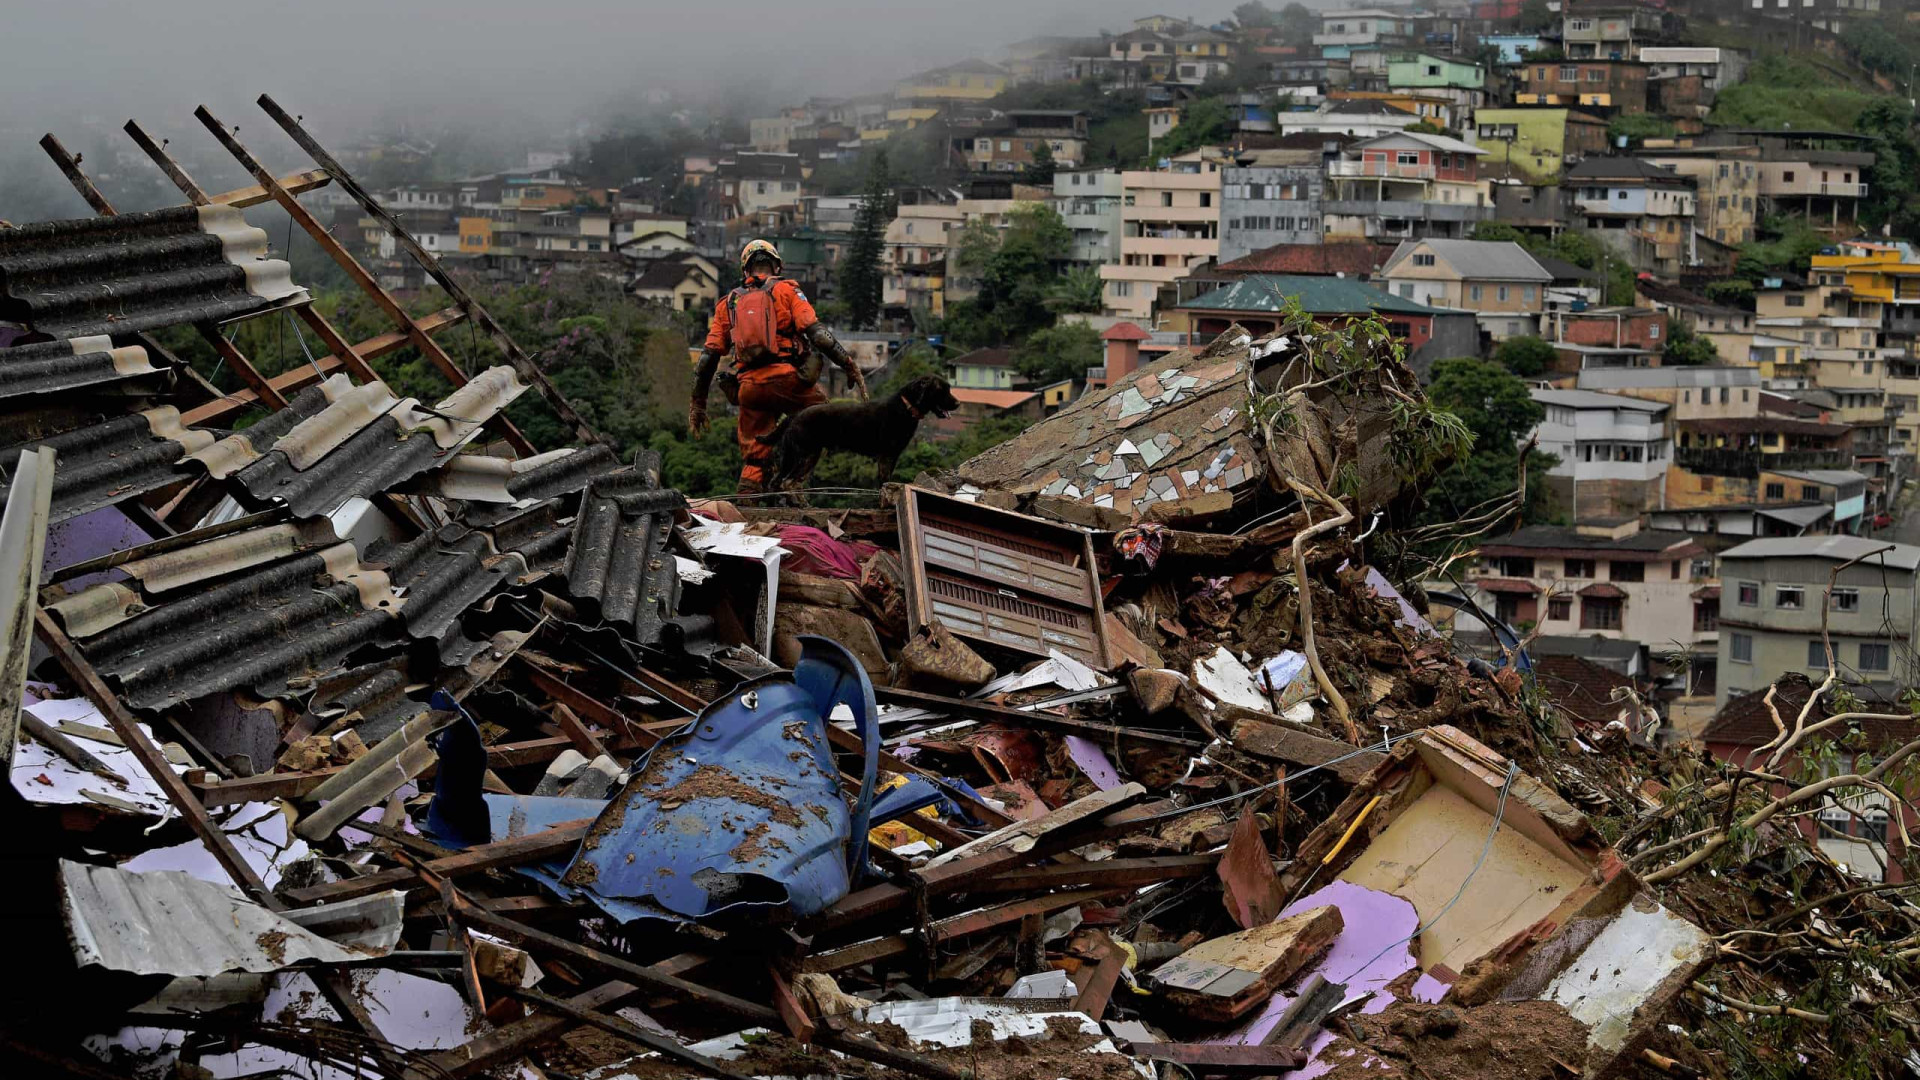 Saiba como ajudar as vítimas da chuva em Petrópolis, no Rio